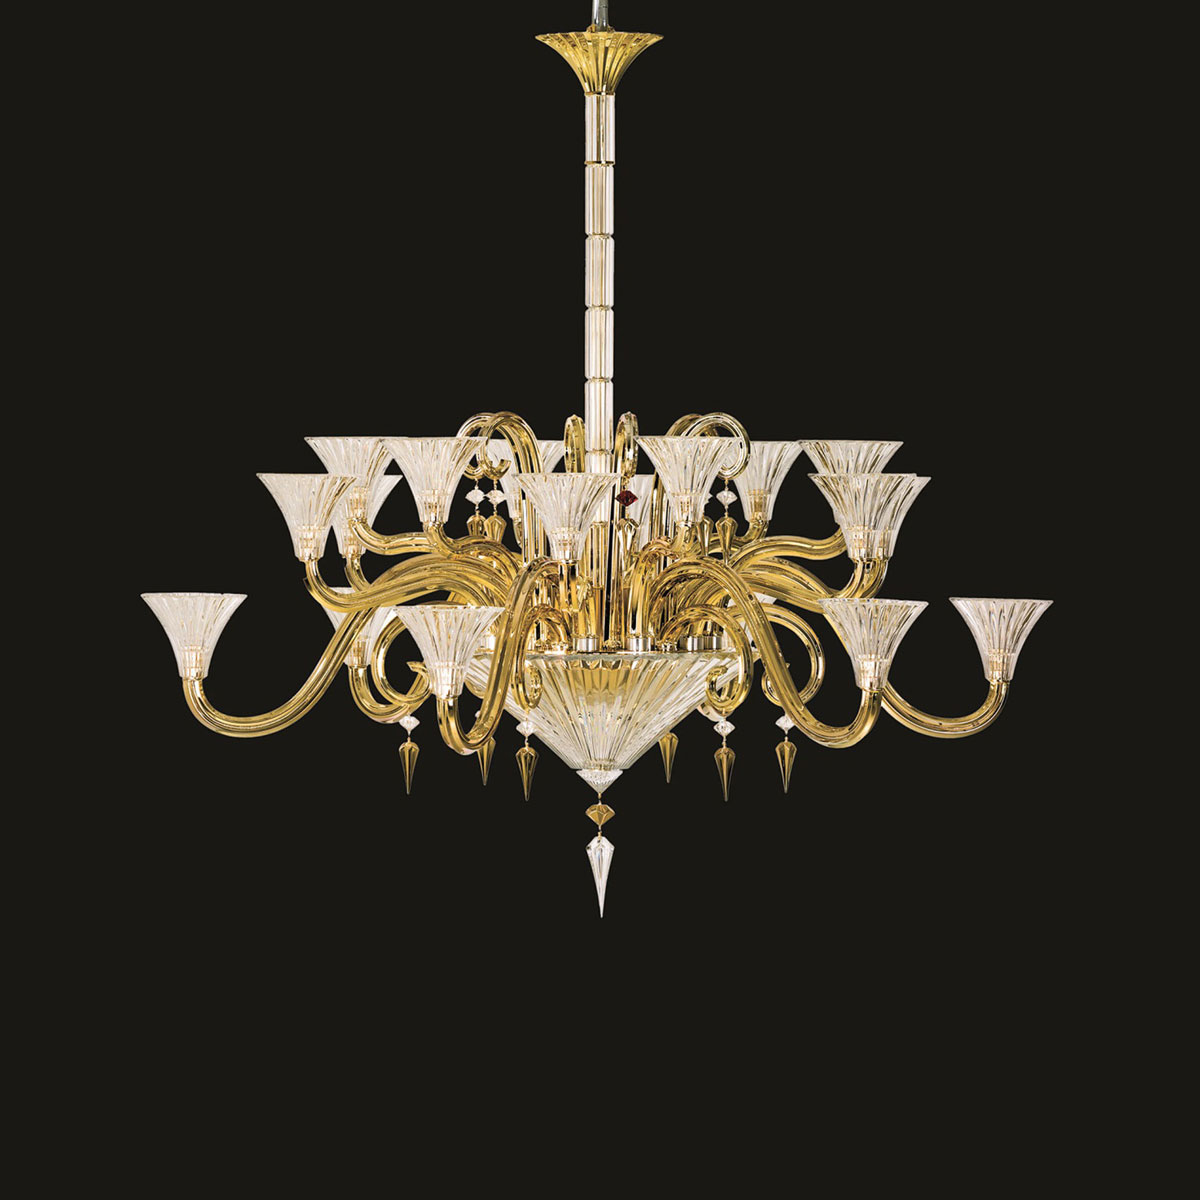 Baccarat Crystal, Mille Nuits Gold D'Or Chandelier, 18 Light